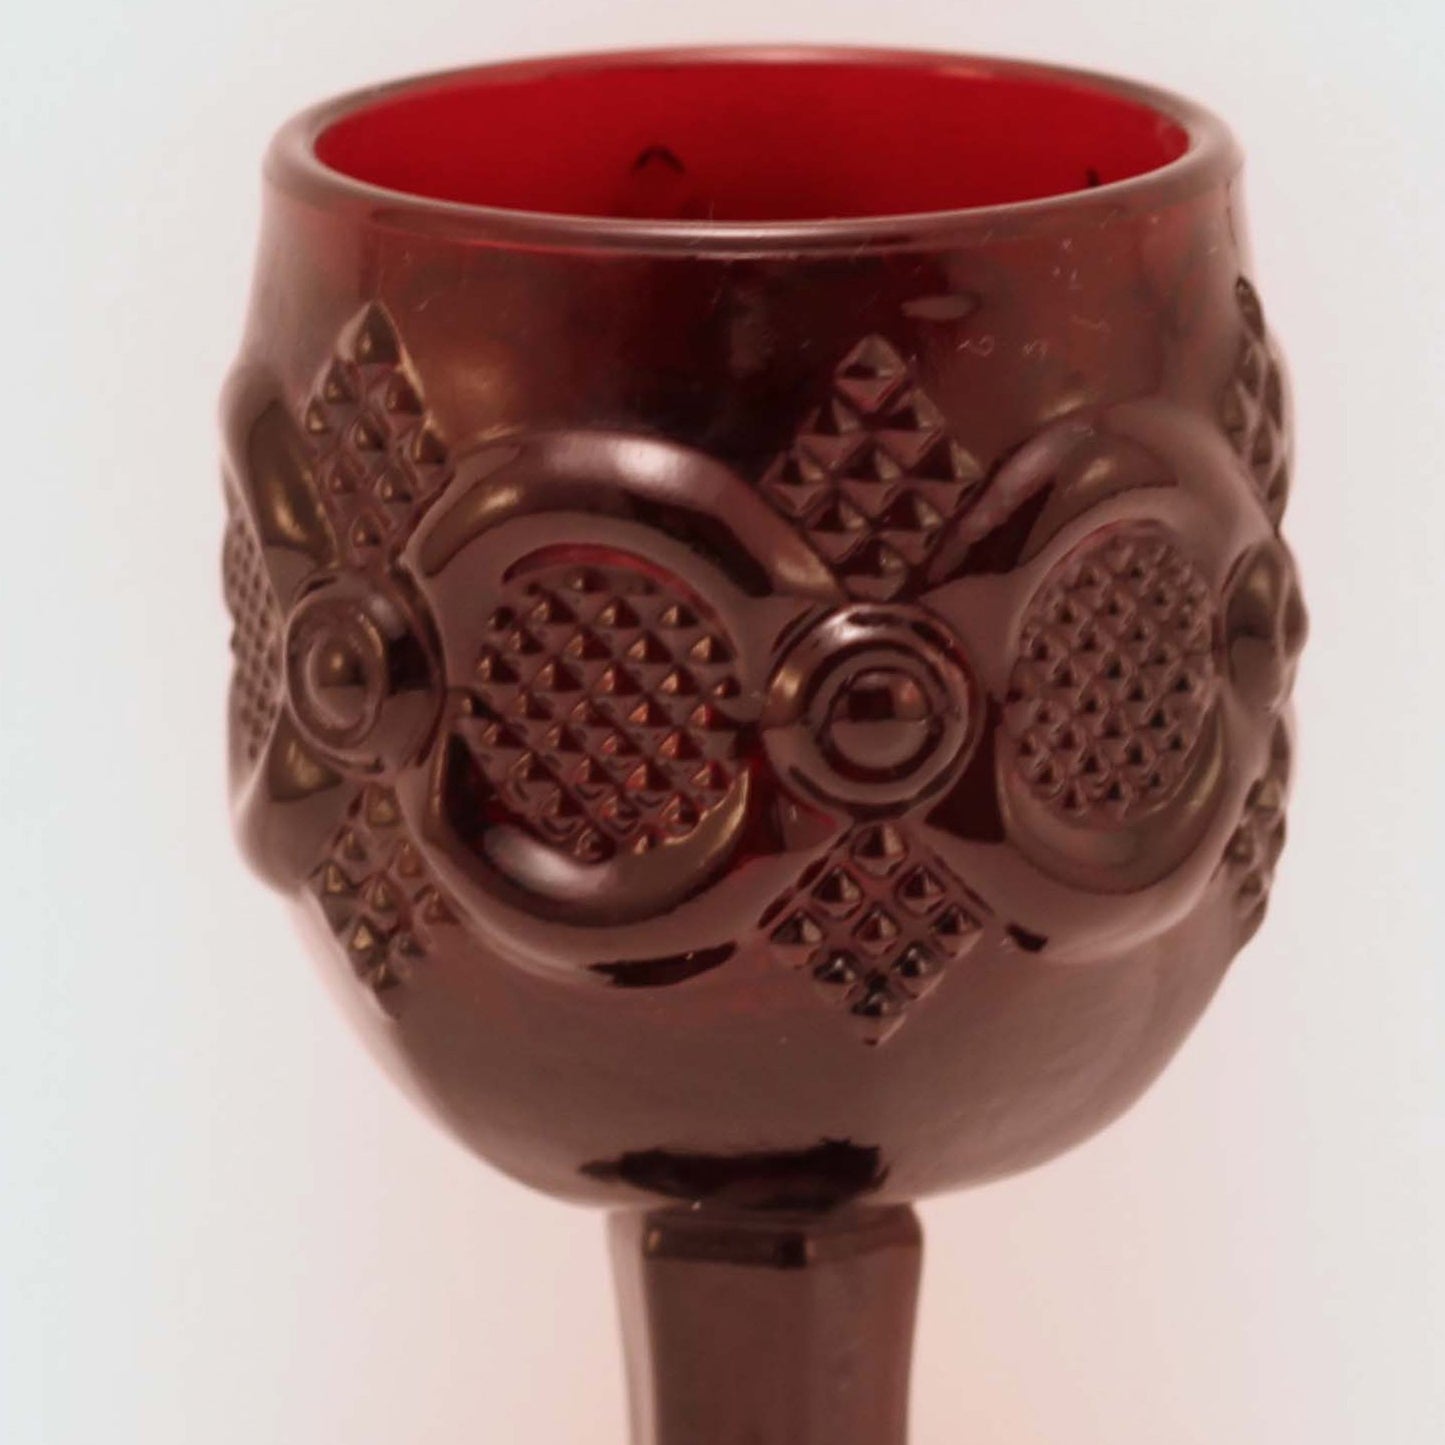 CAPE COD 1876 COLLECTION By Avon Aperitif Wine Glass